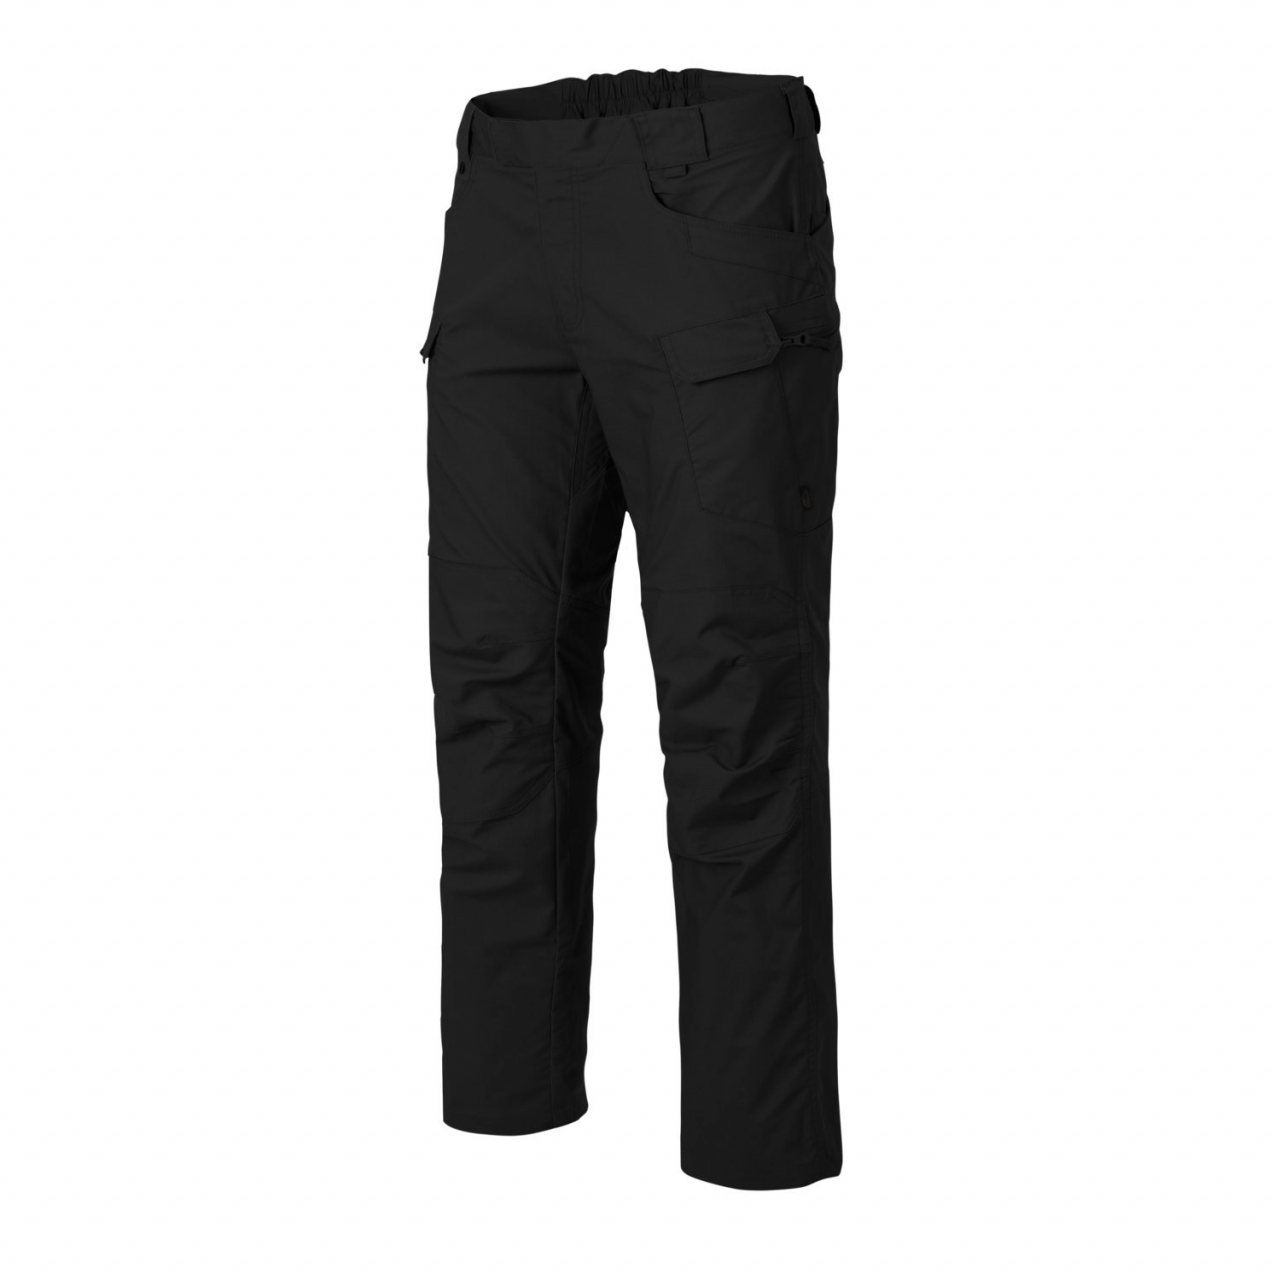 Kalhoty Helikon UTP PolyCotton Ripstop - černé